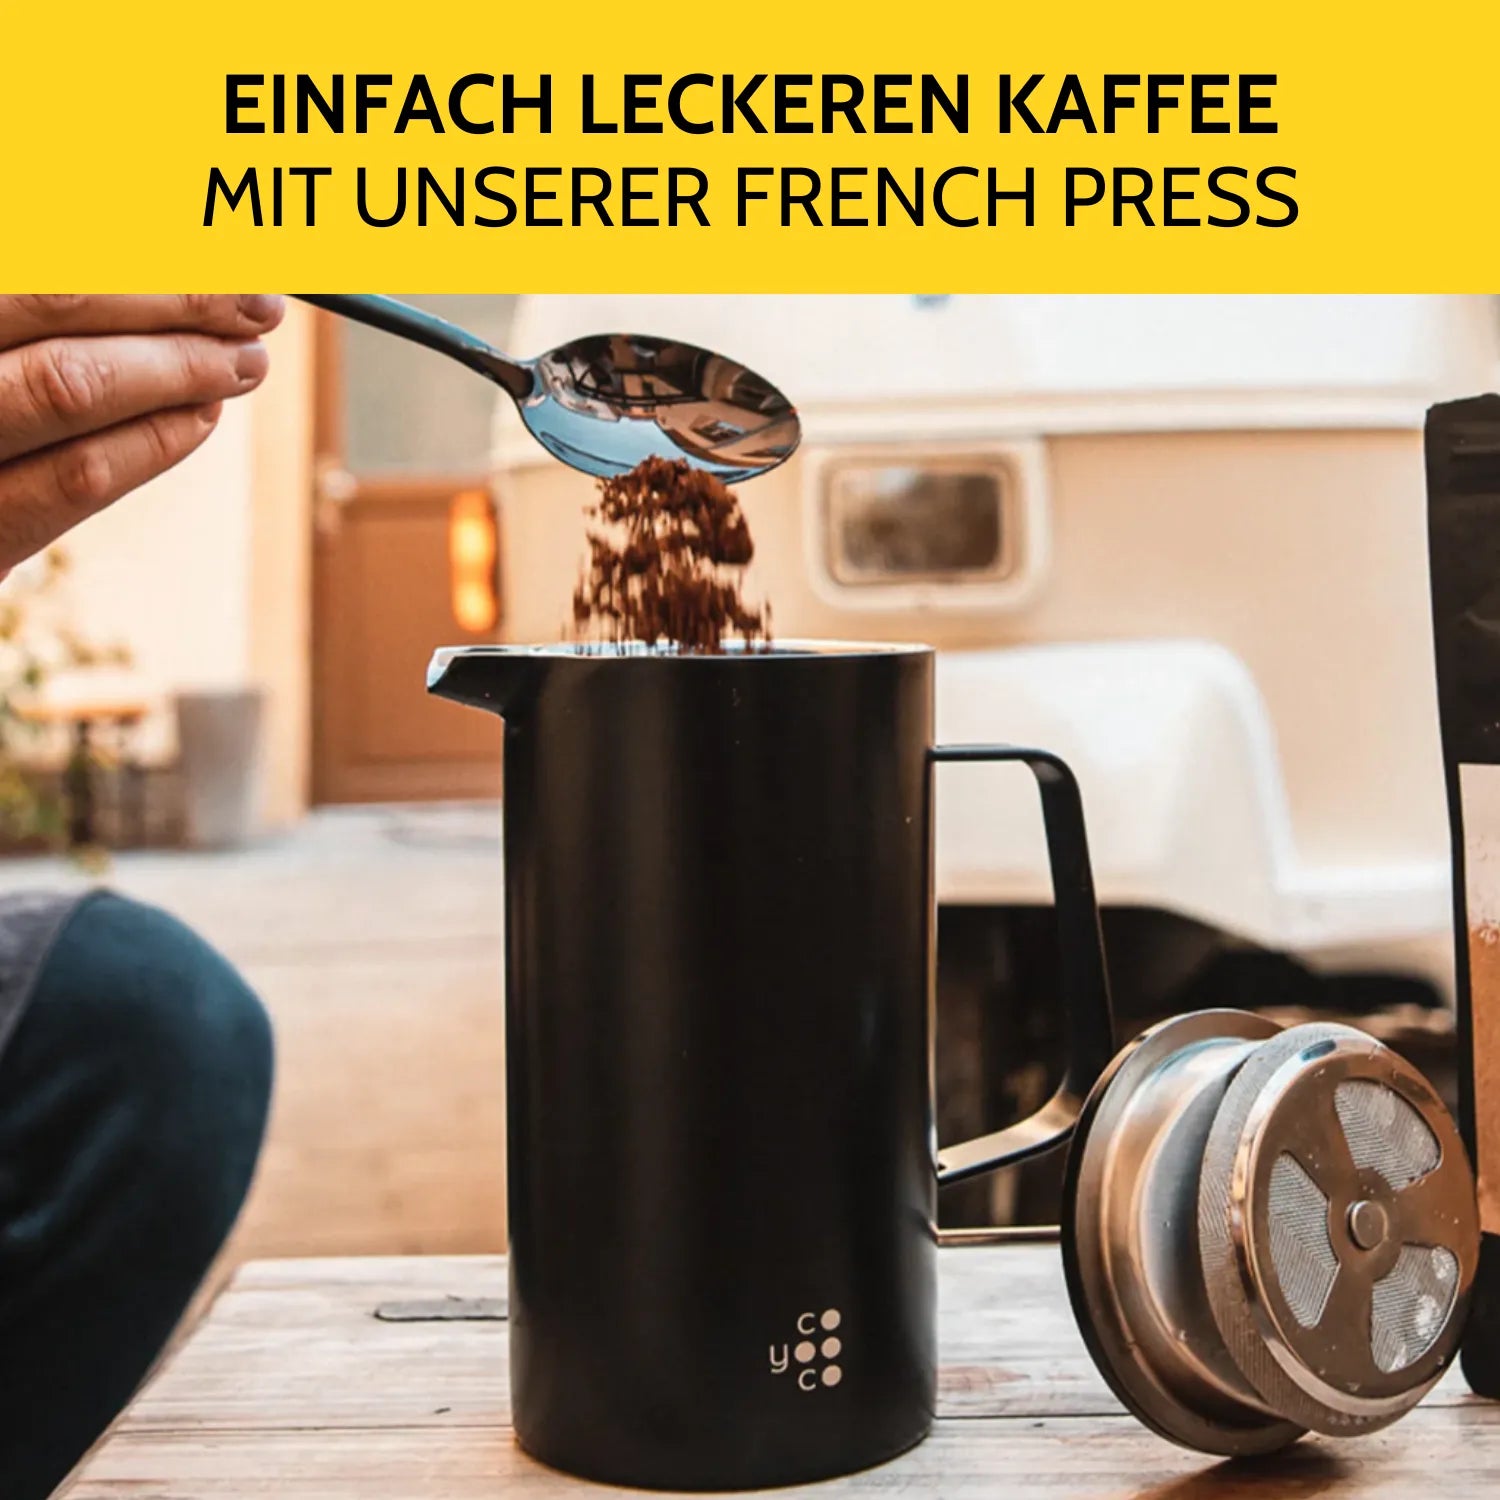 French Press wird mit Kaffeemehl befüllt. 